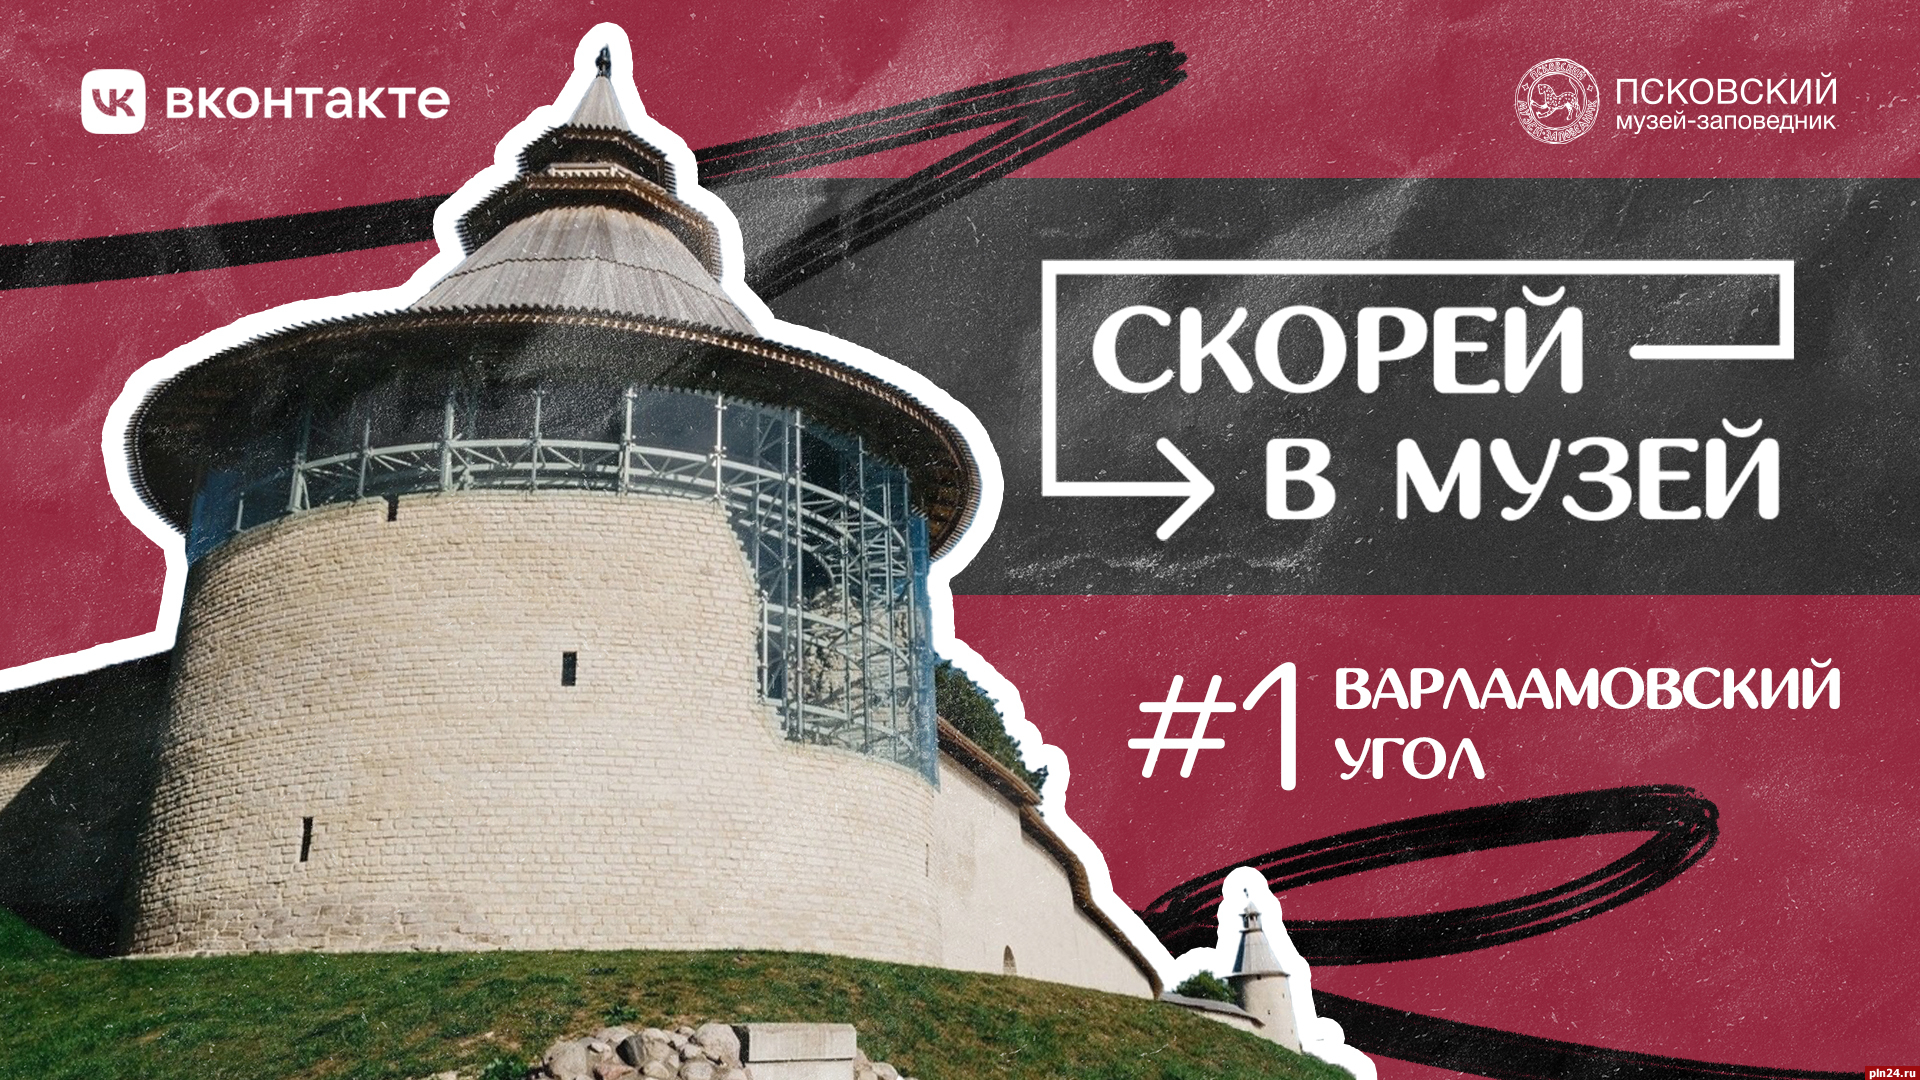 Первый выпуск нового тревел-шоу Псковского музея выйдет 1 августа